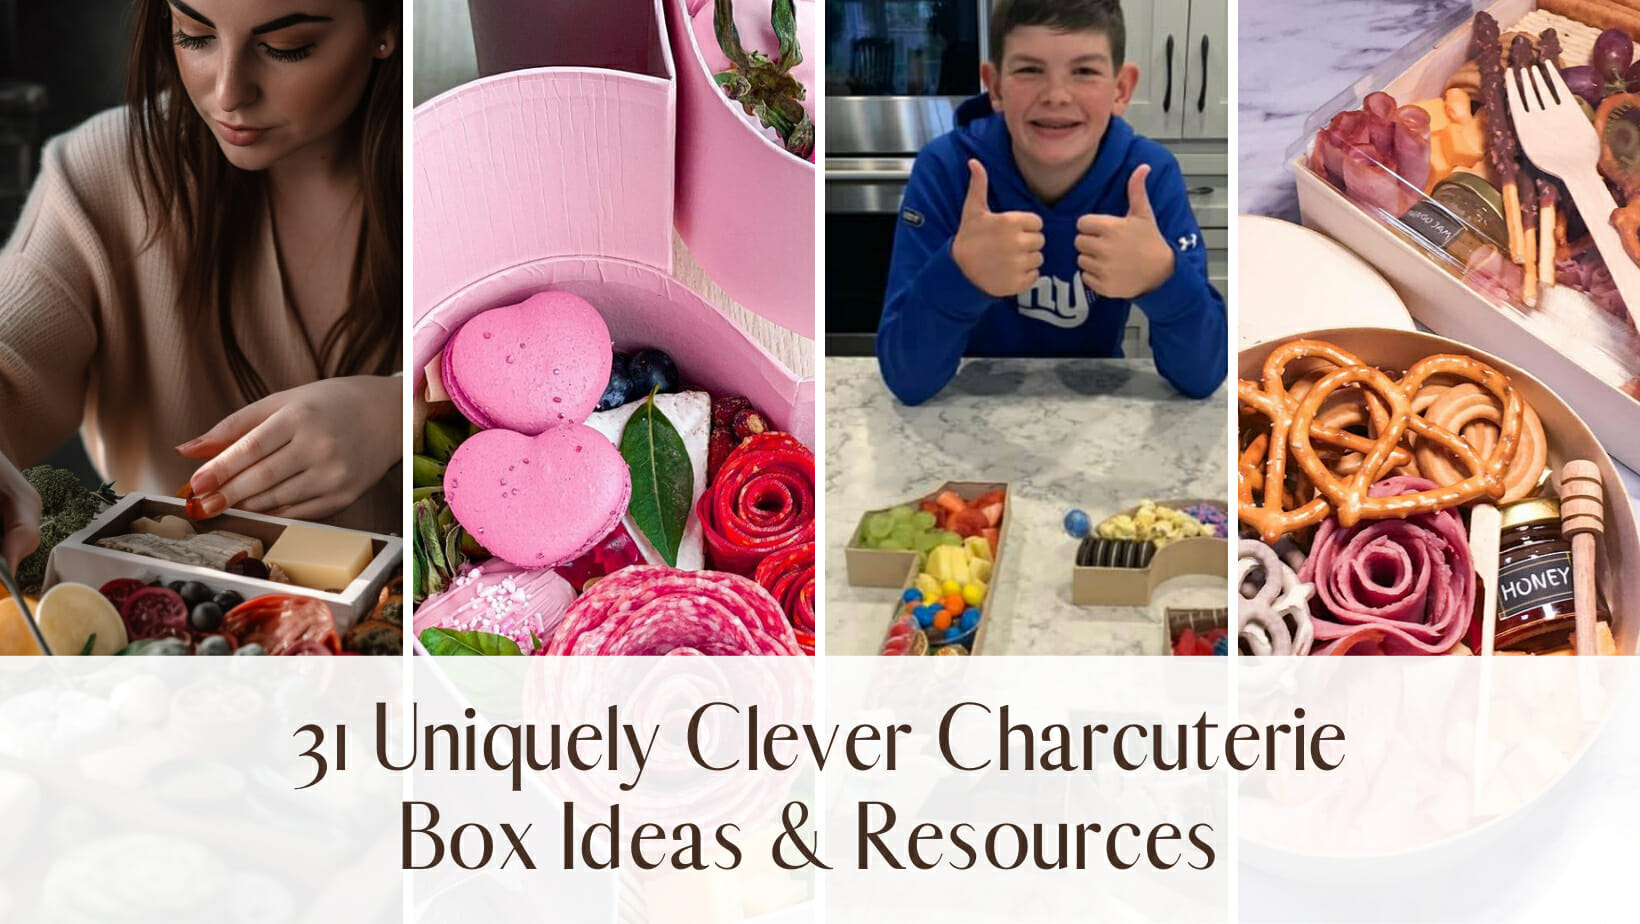 31 Uniquely Clever Charcuterie Box Ideas & Resources